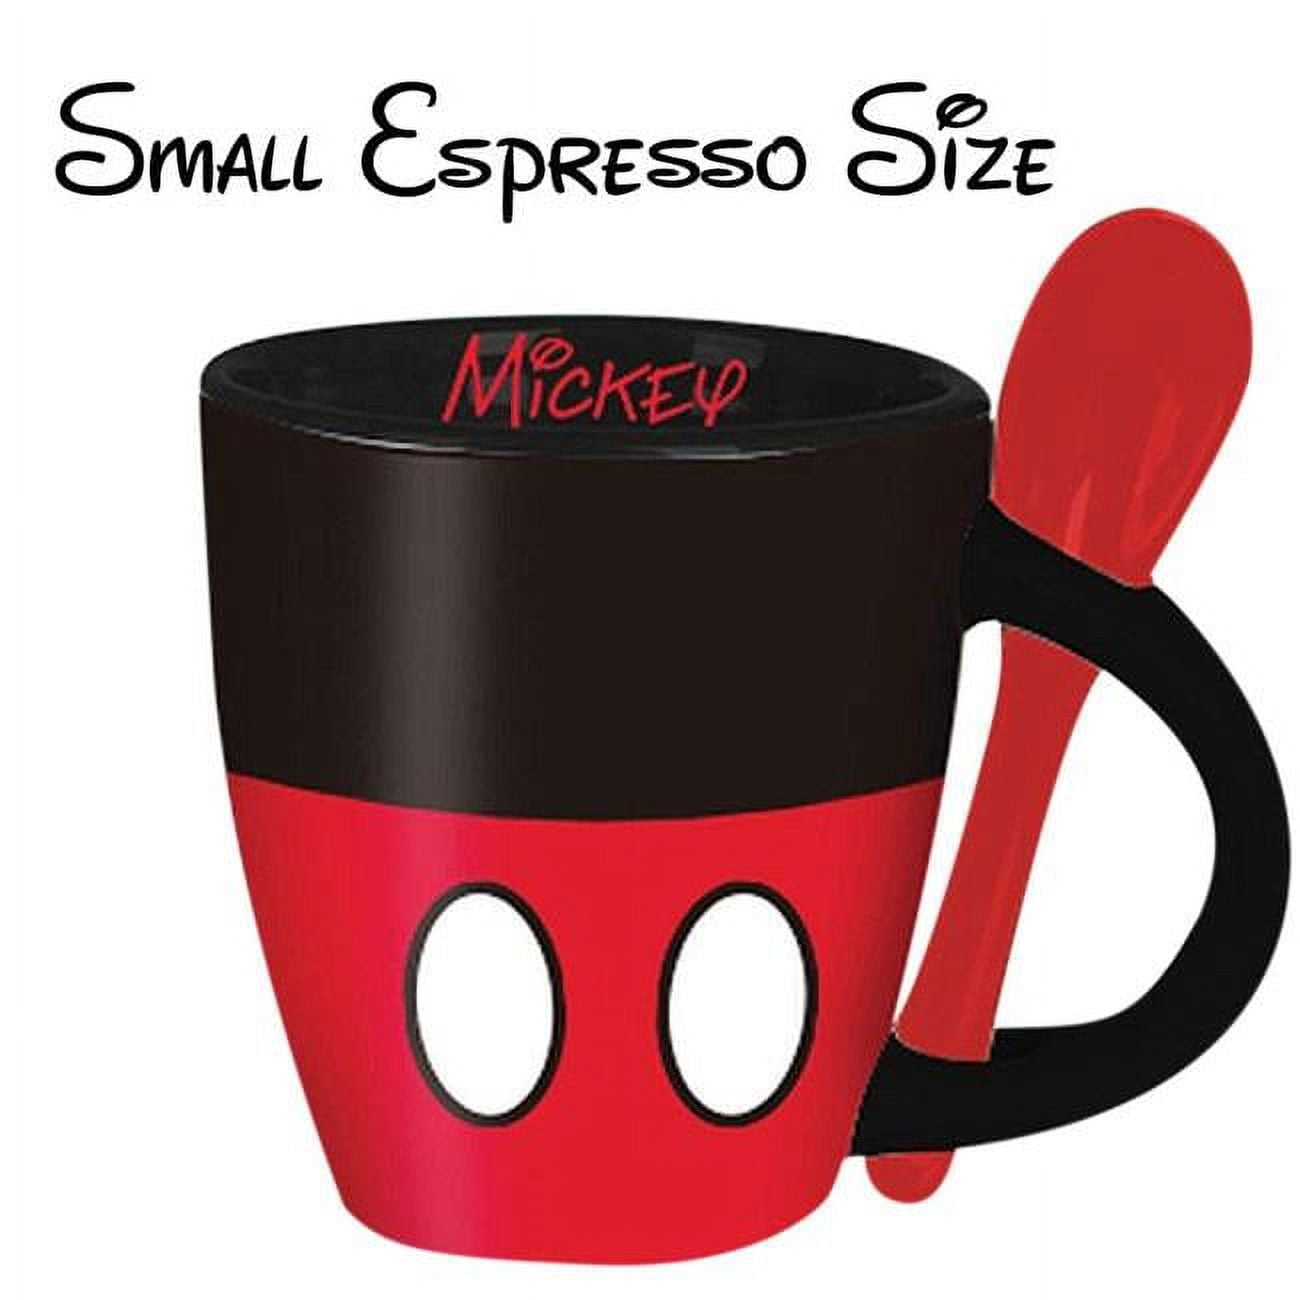 Minnie Mouse Mug with Spoon